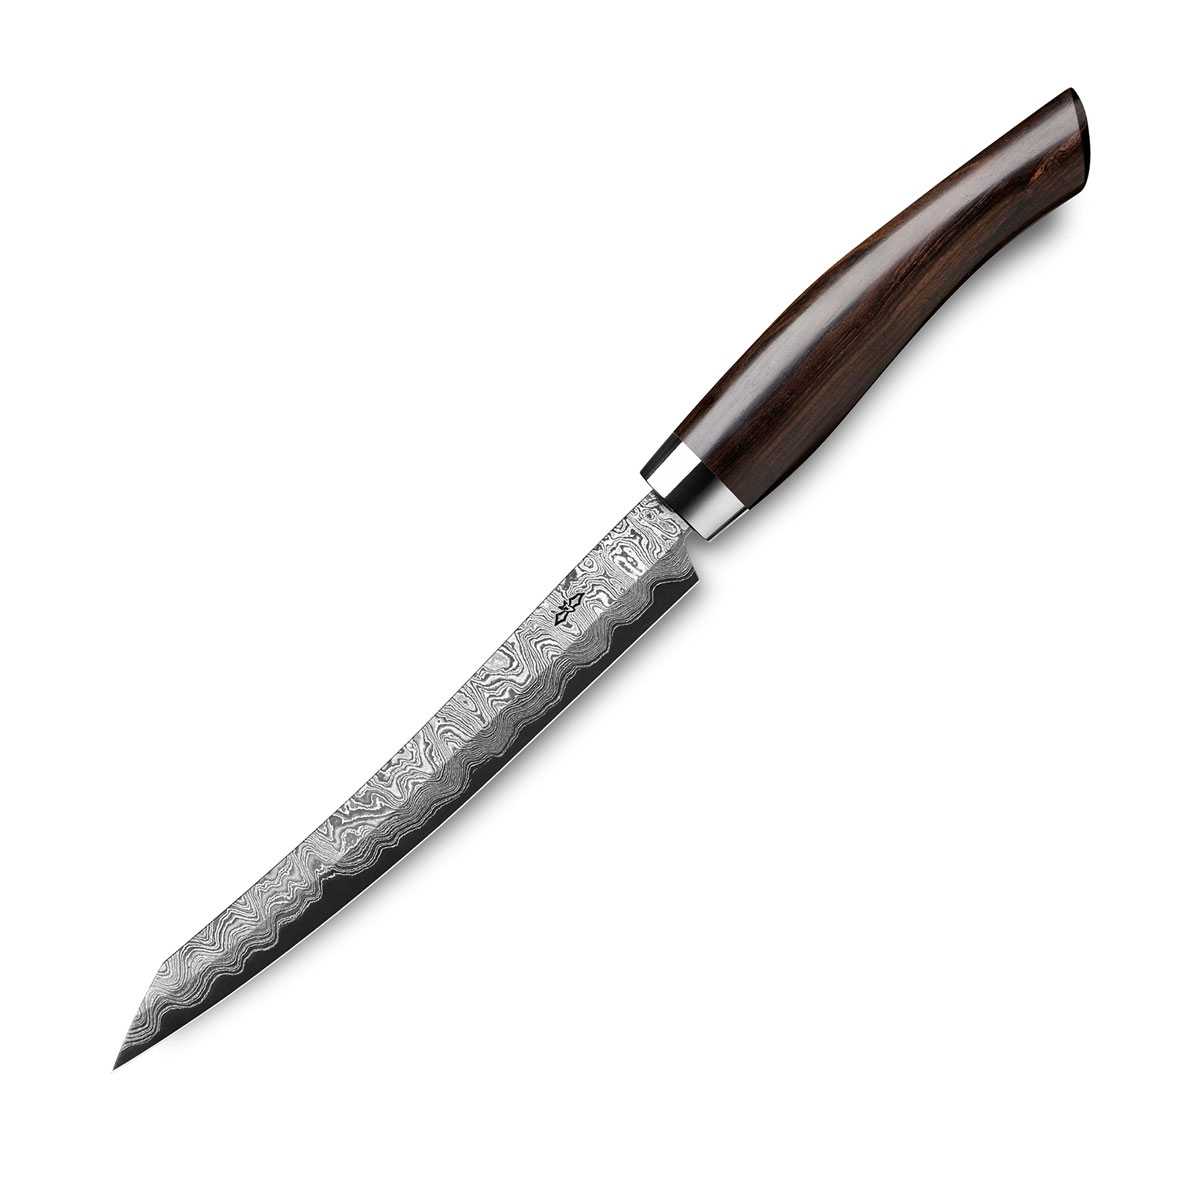 Nesmuk Exklusiv C150 Damast Slicer 16 cm mit Schneidlage / Griff aus Grenadillholz